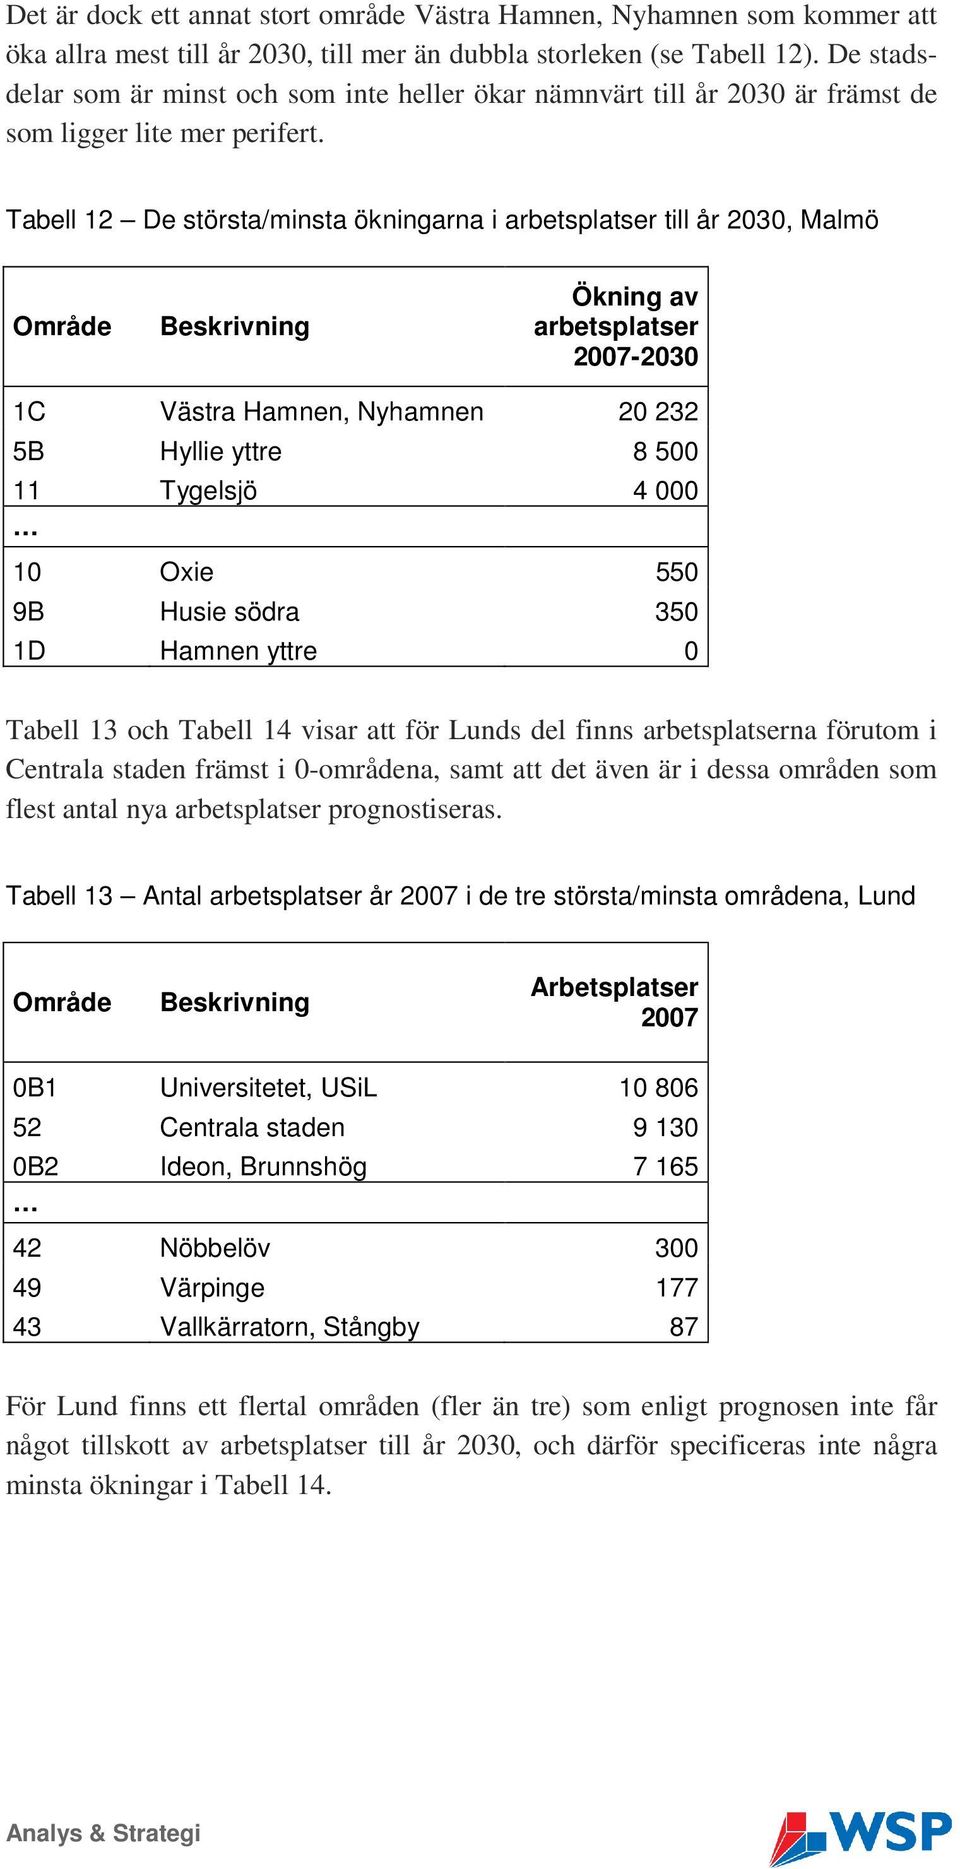 Tabell 12 De största/minsta ökningarna i arbetsplatser till år 2030, Malmö Ökning av arbetsplatser 2007-2030 1C Västra Hamnen, Nyhamnen 20 232 5B Hyllie yttre 8 500 11 Tygelsjö 4 000 10 Oxie 550 9B